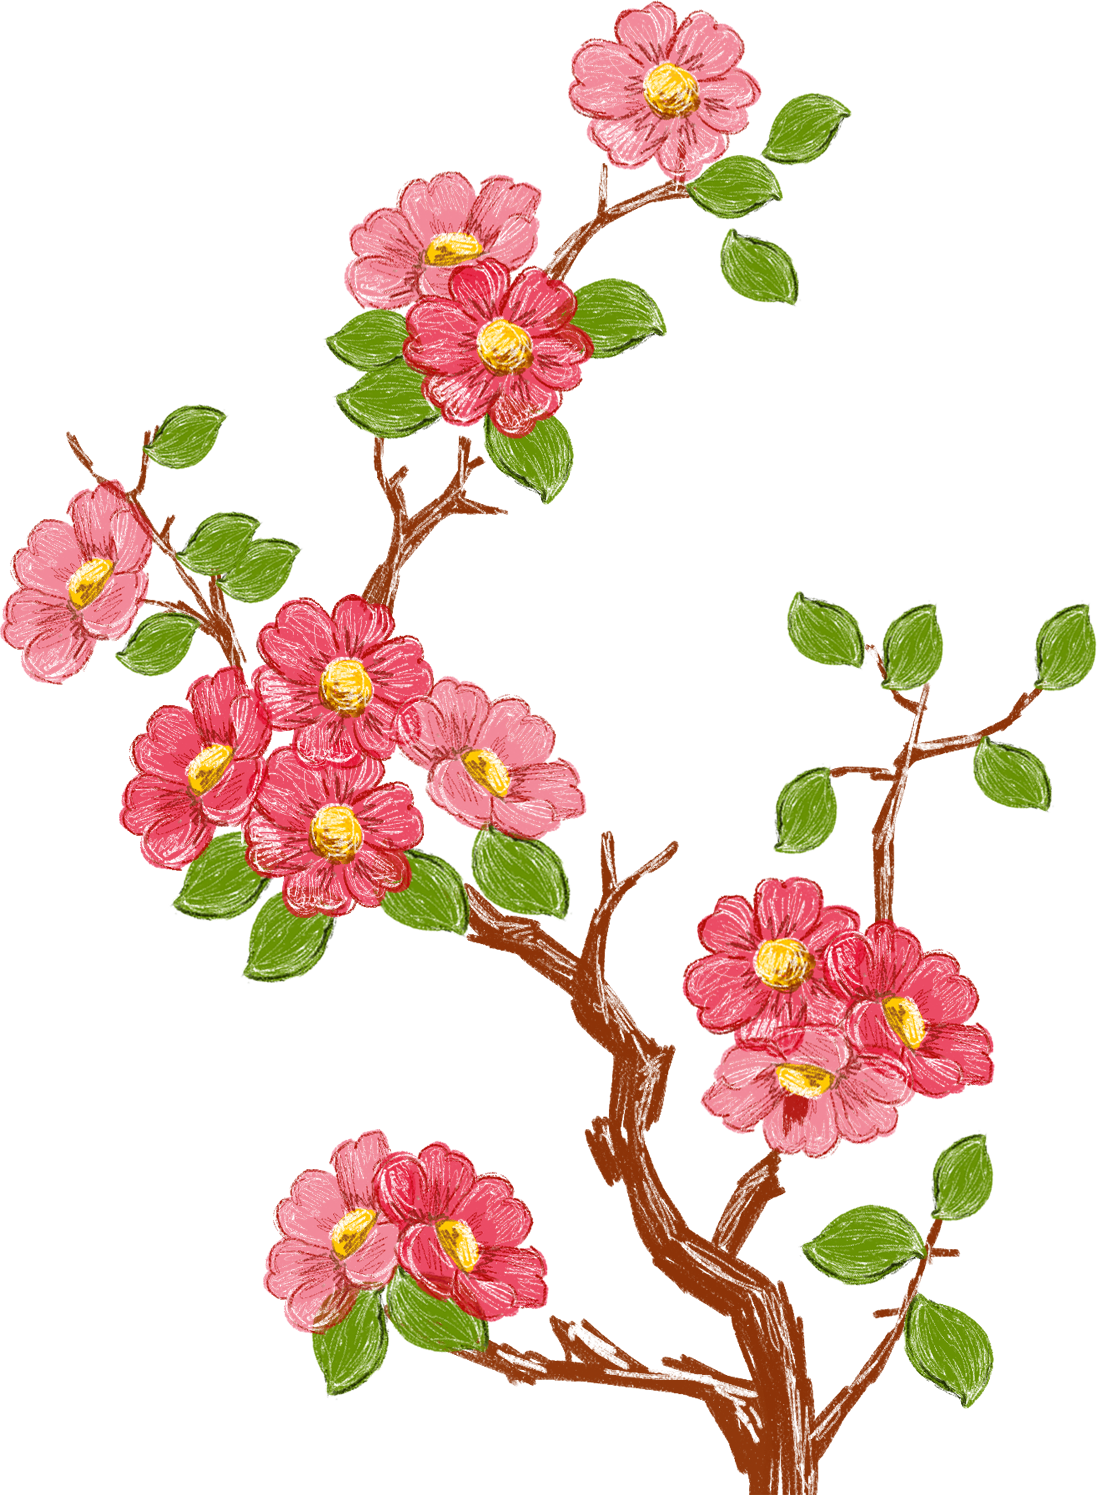 赤い花のイラスト フリー素材 No 673 手書き風 ピンク 枝葉